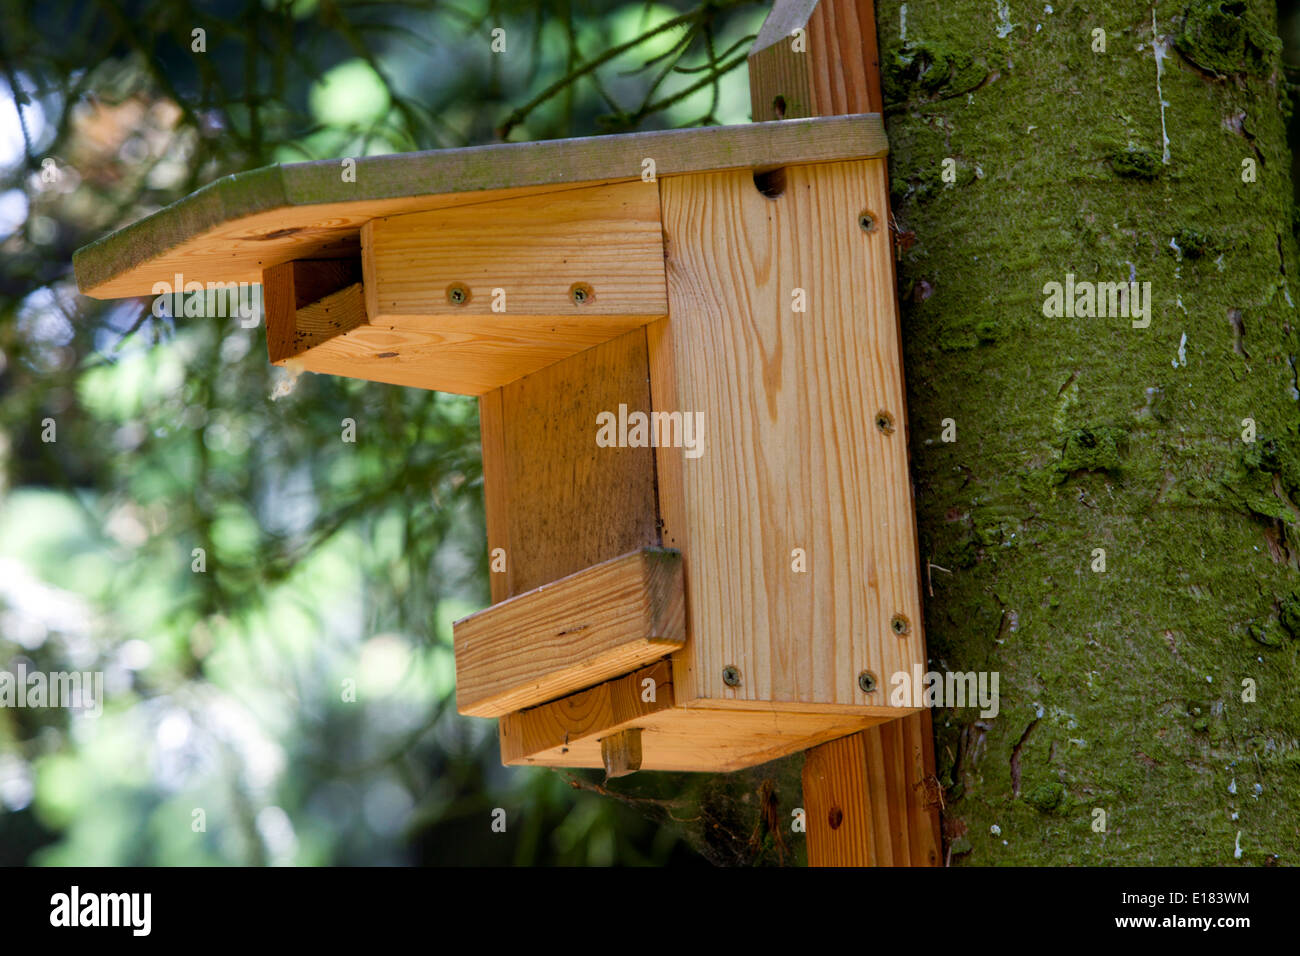 Abri pour oiseaux contre les prédateurs sur un arbre de la forêt, une boîte en bois pour la nidification des oiseaux Banque D'Images